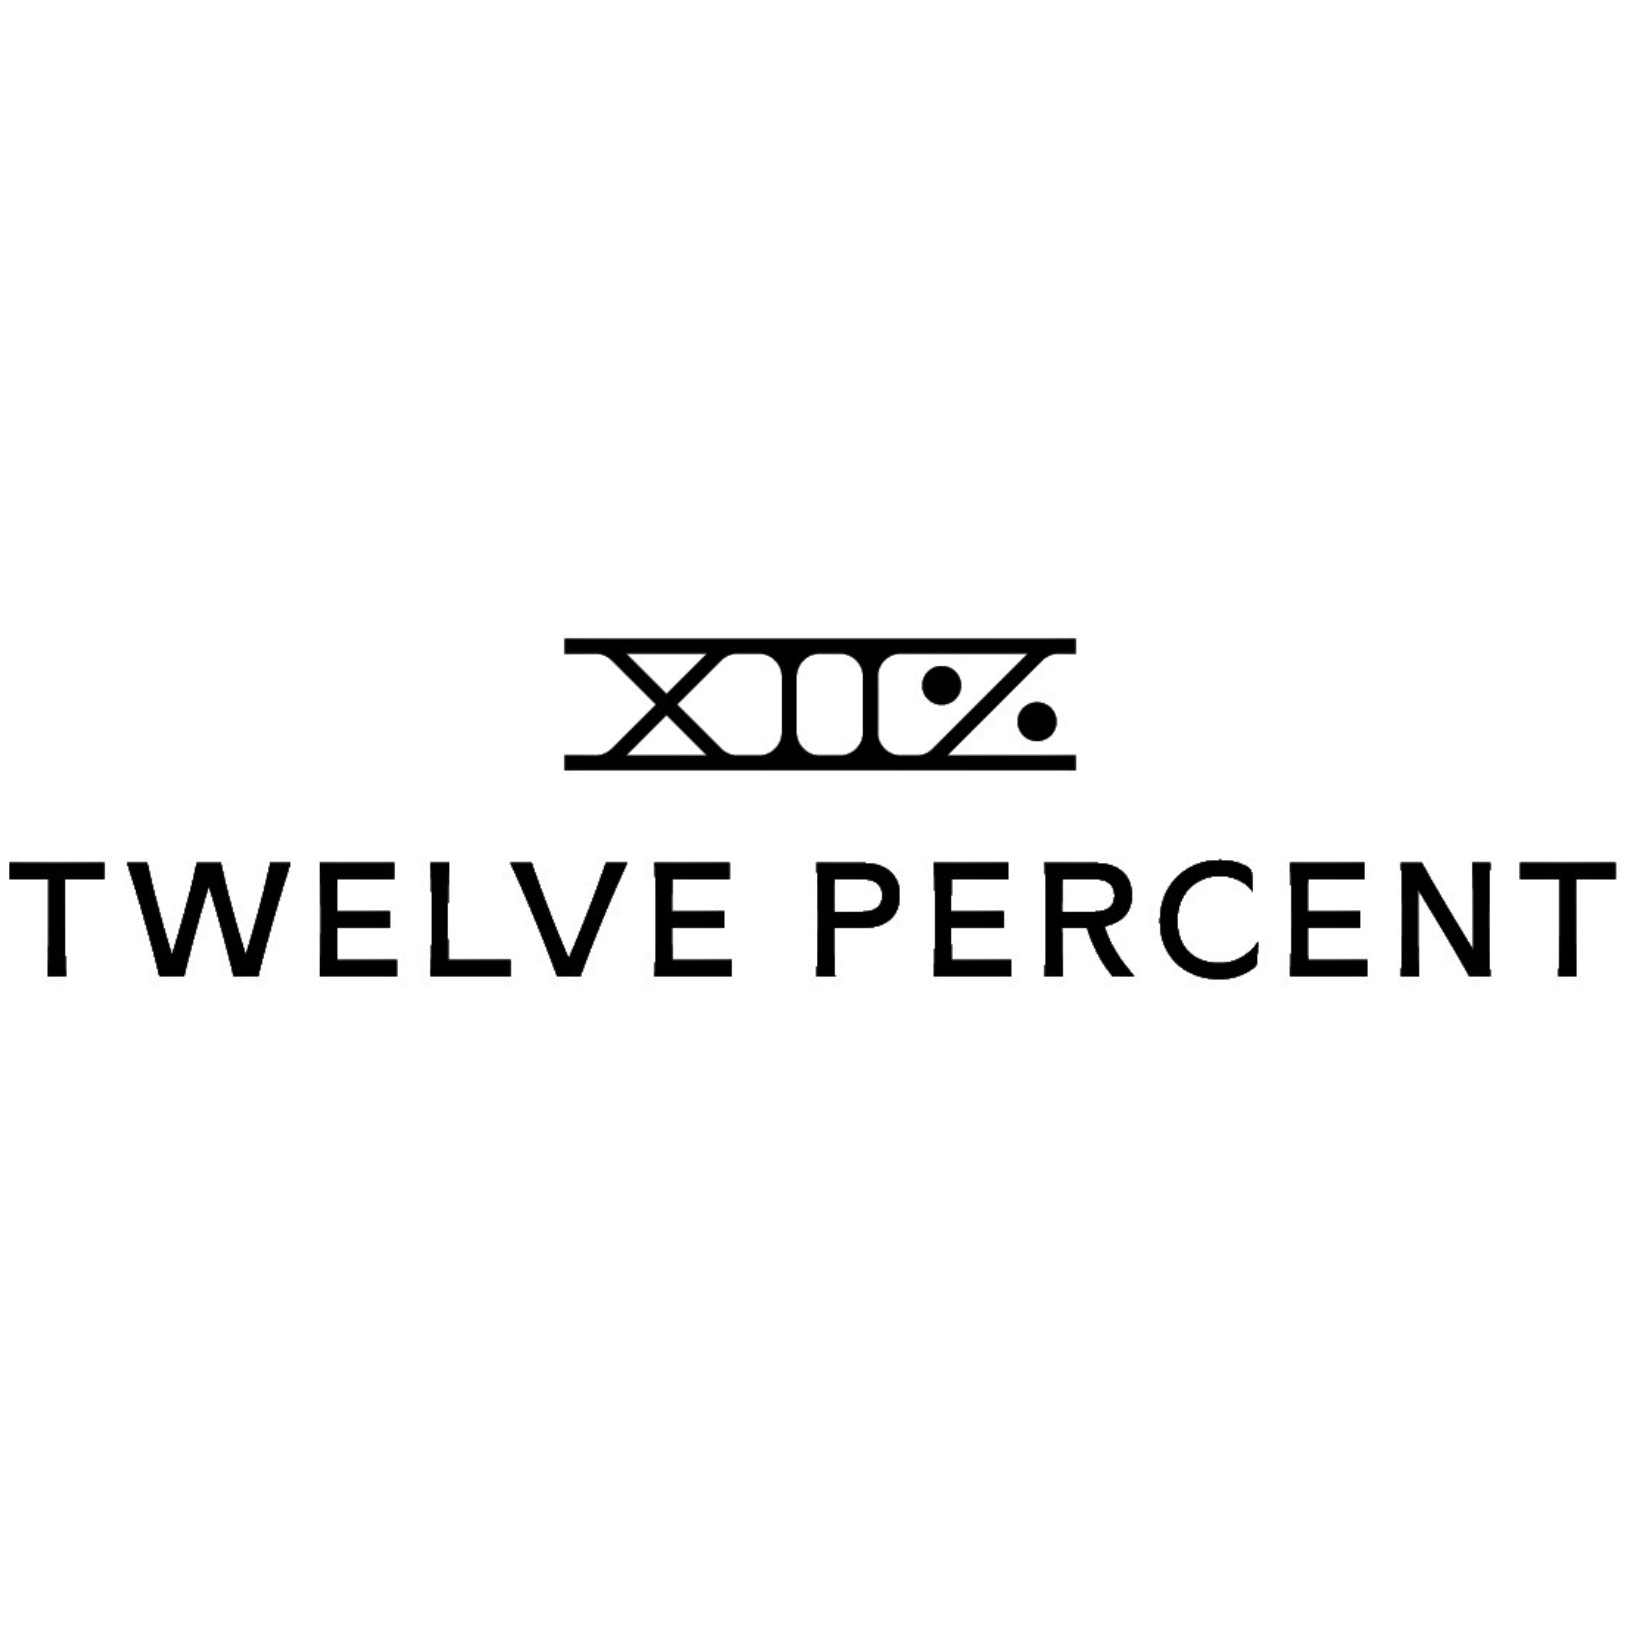 TwelvePercent.png